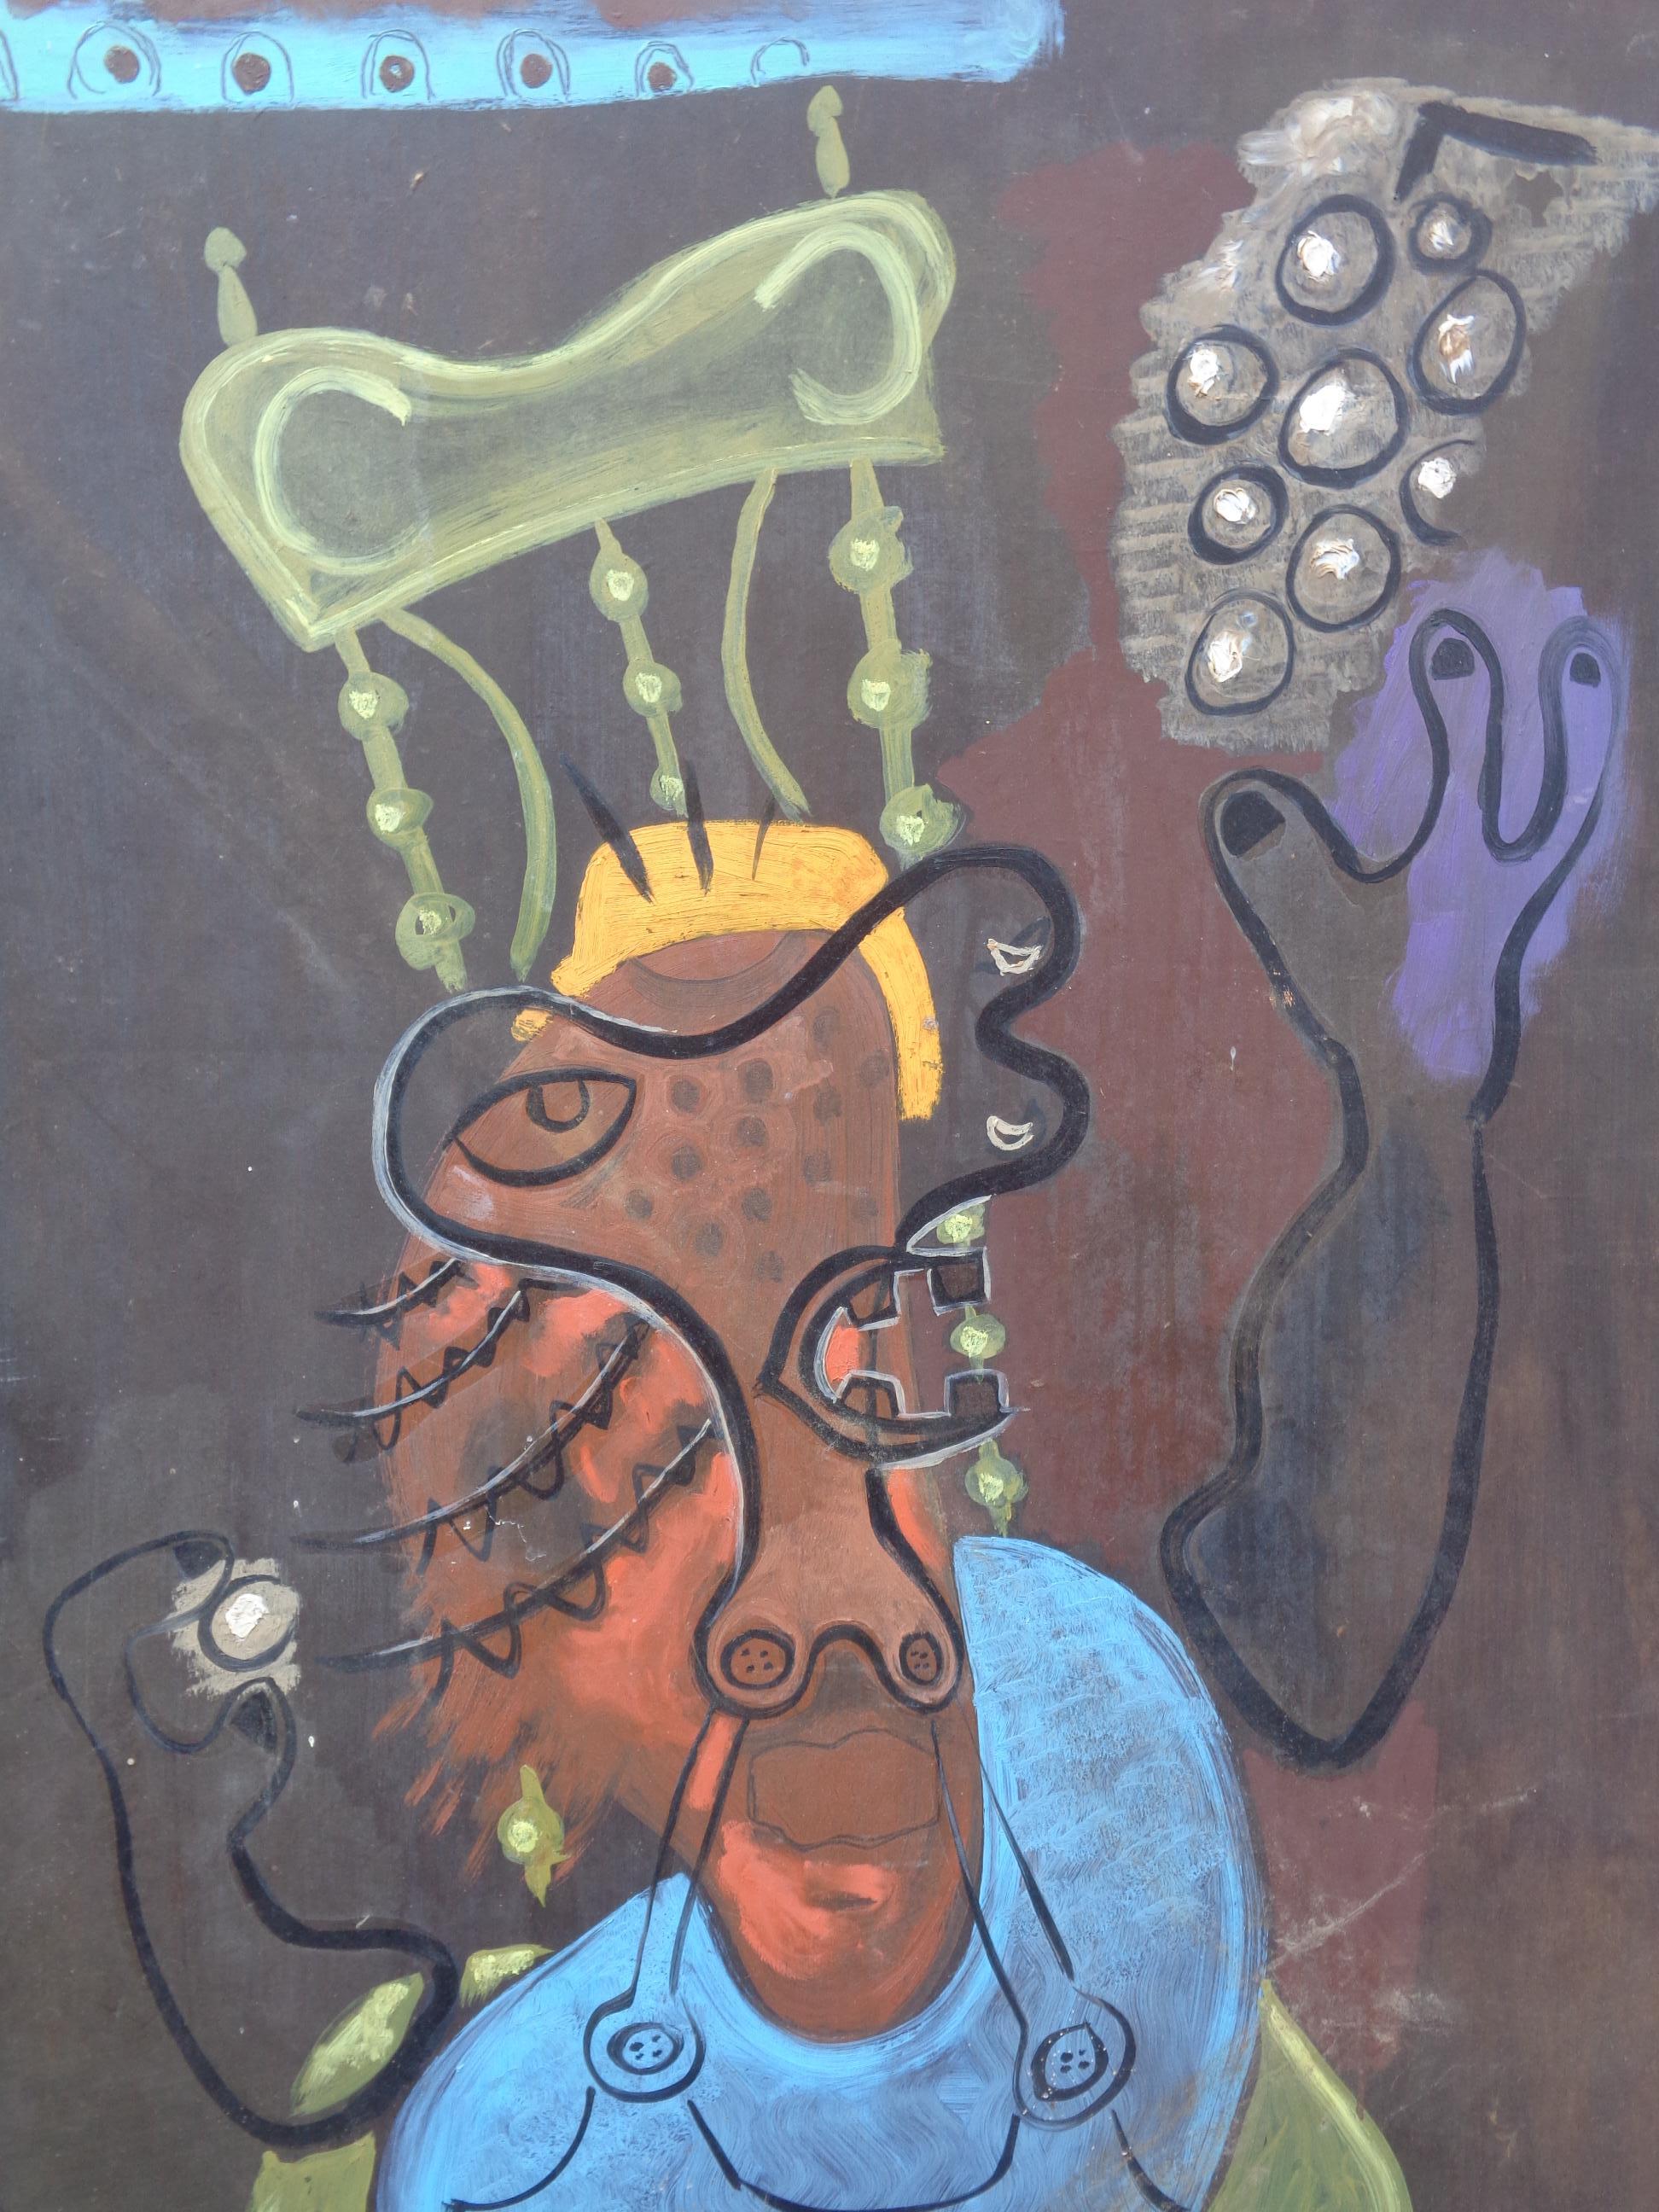 Amerikanisches abstraktes impressionistisches Ölgemälde auf Maisonit von Zoute' ( geb. Leon Salter, 1903 - 1976 / North Rose, NY ) ein Porträt seiner geliebten Frau Thelma auf einem hohen Stuhl sitzend mit einer erhobenen Hand, die eine Traube hält